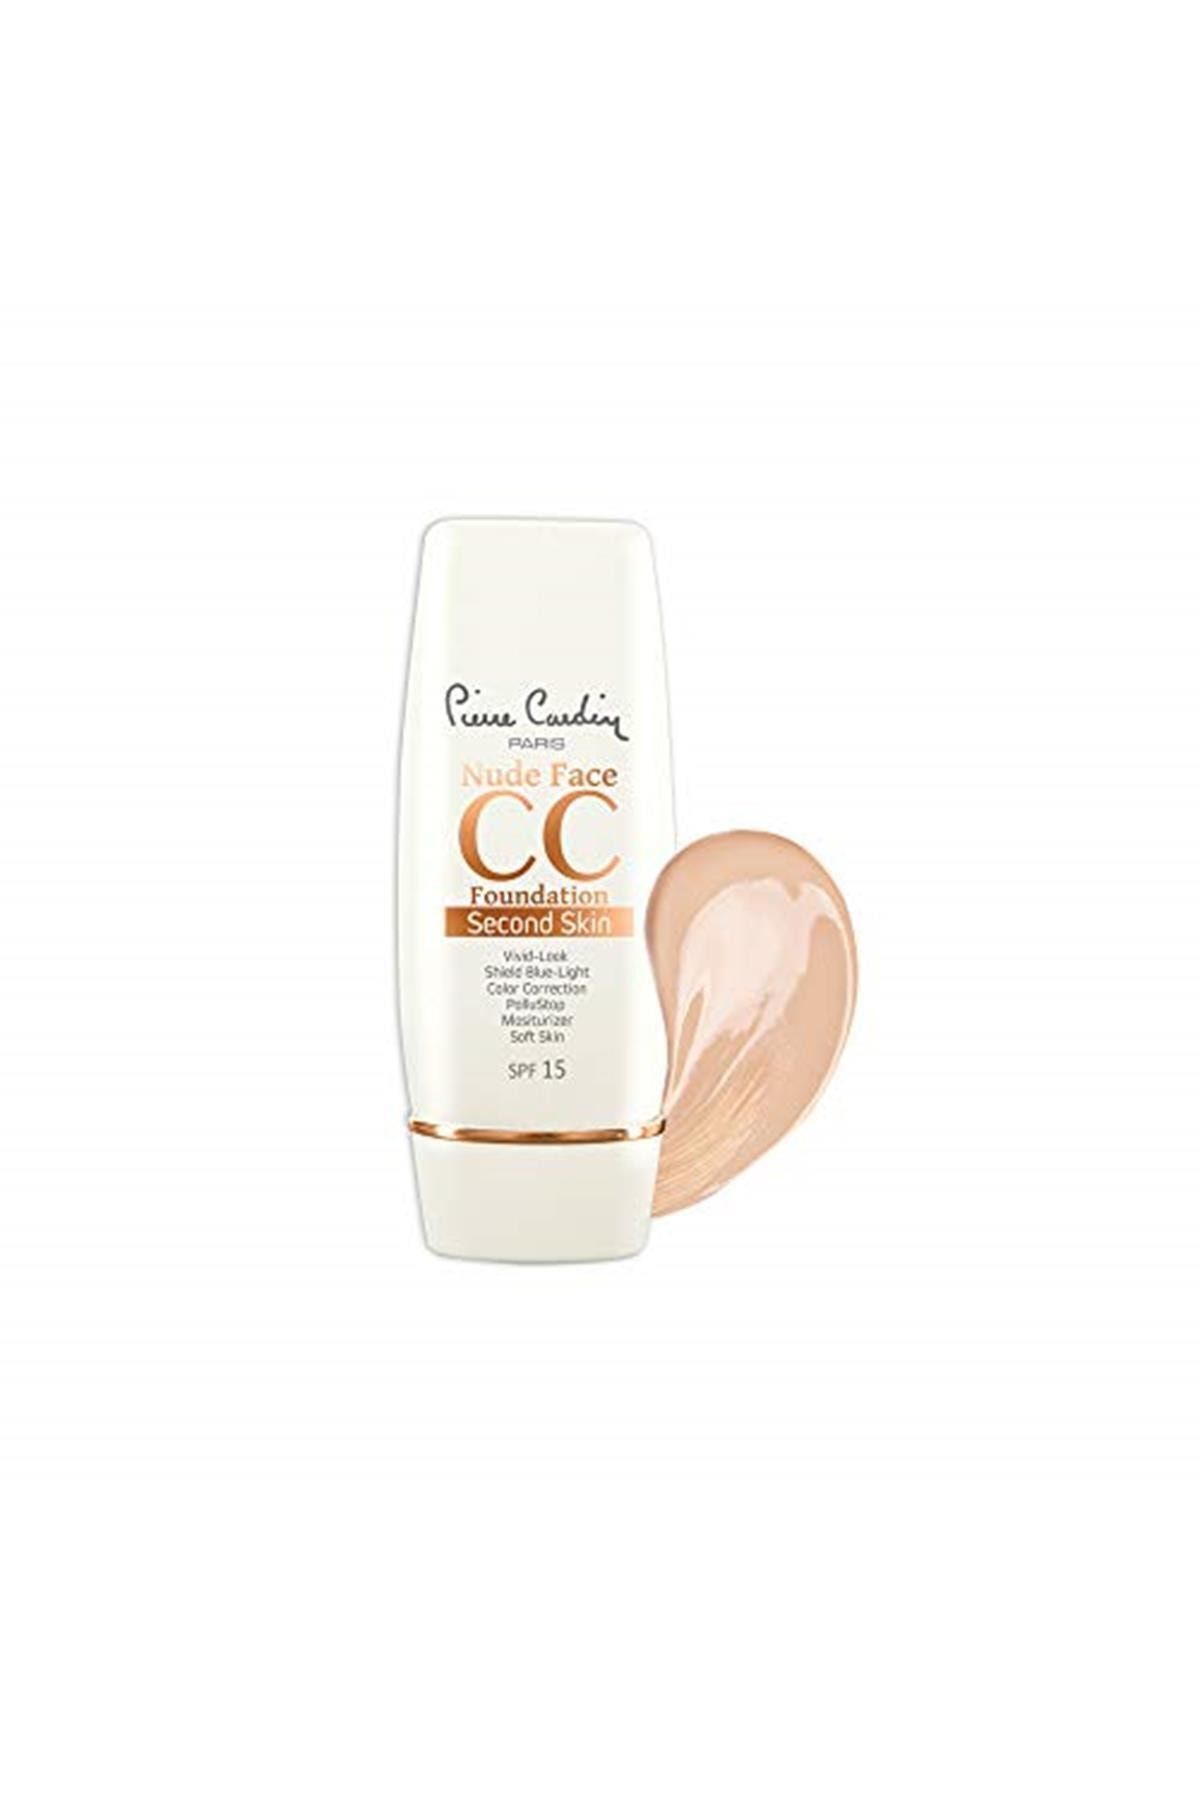 Pierre Cardin Nude Face Cc Cream Spf 15Light